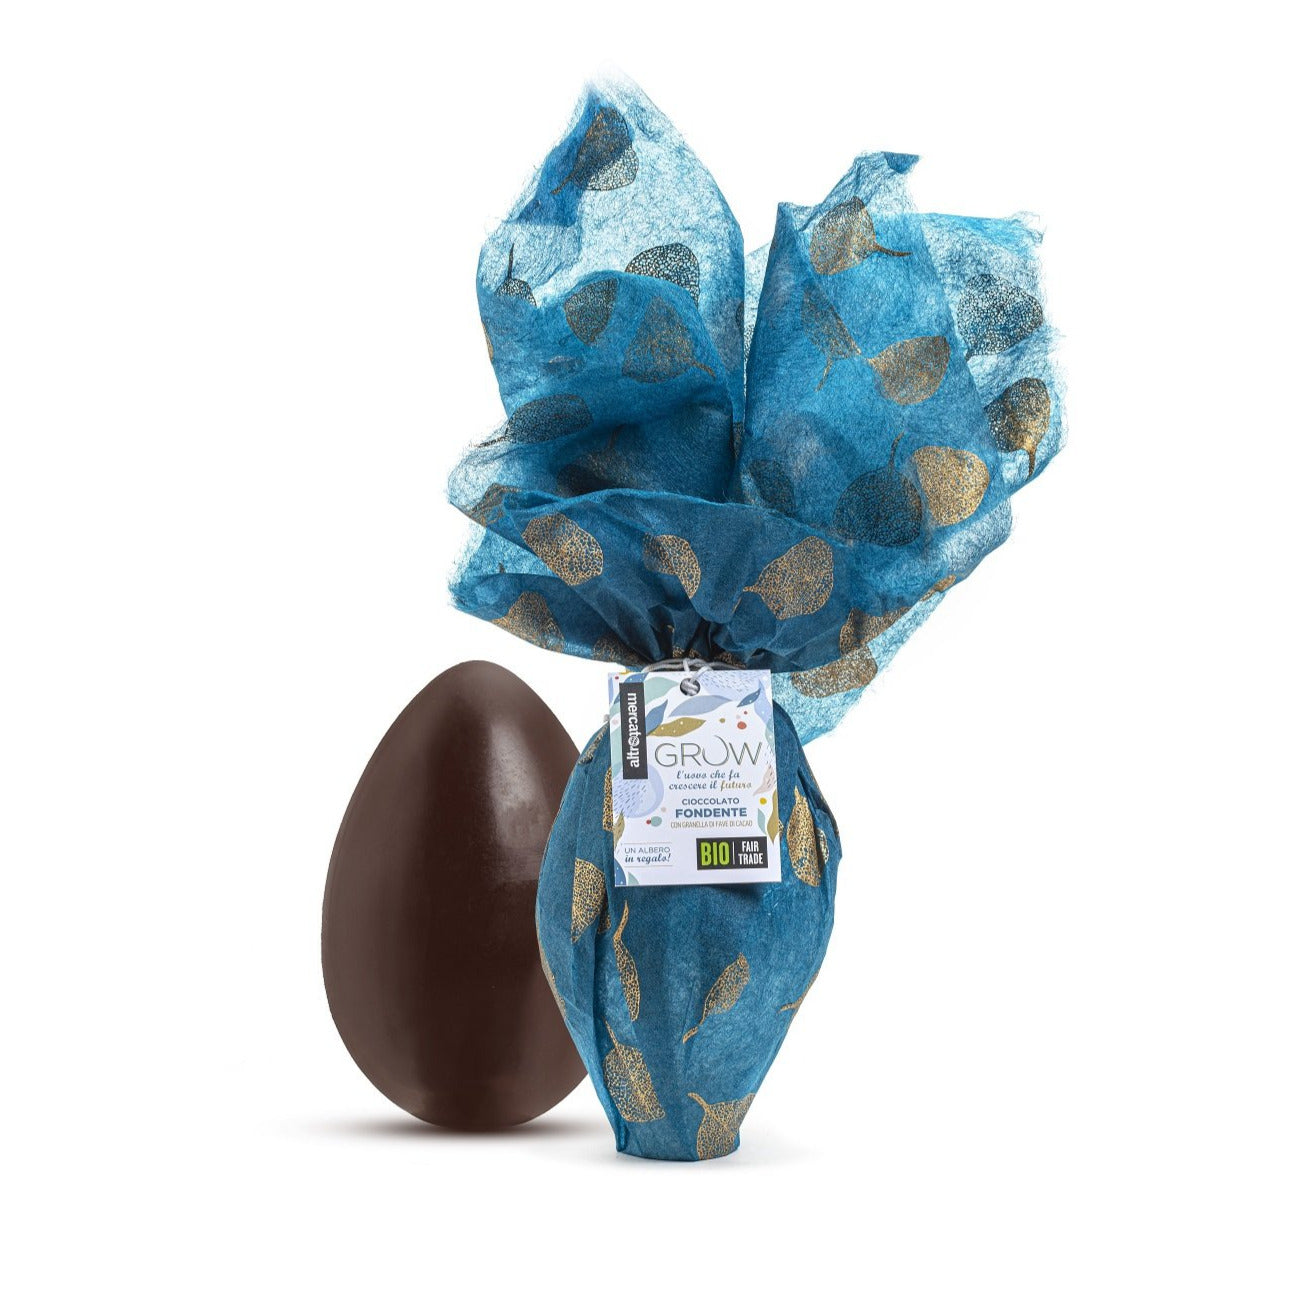 Grow uovo di cioccolato extra fondente Altromercato che pianta un albero di cacao